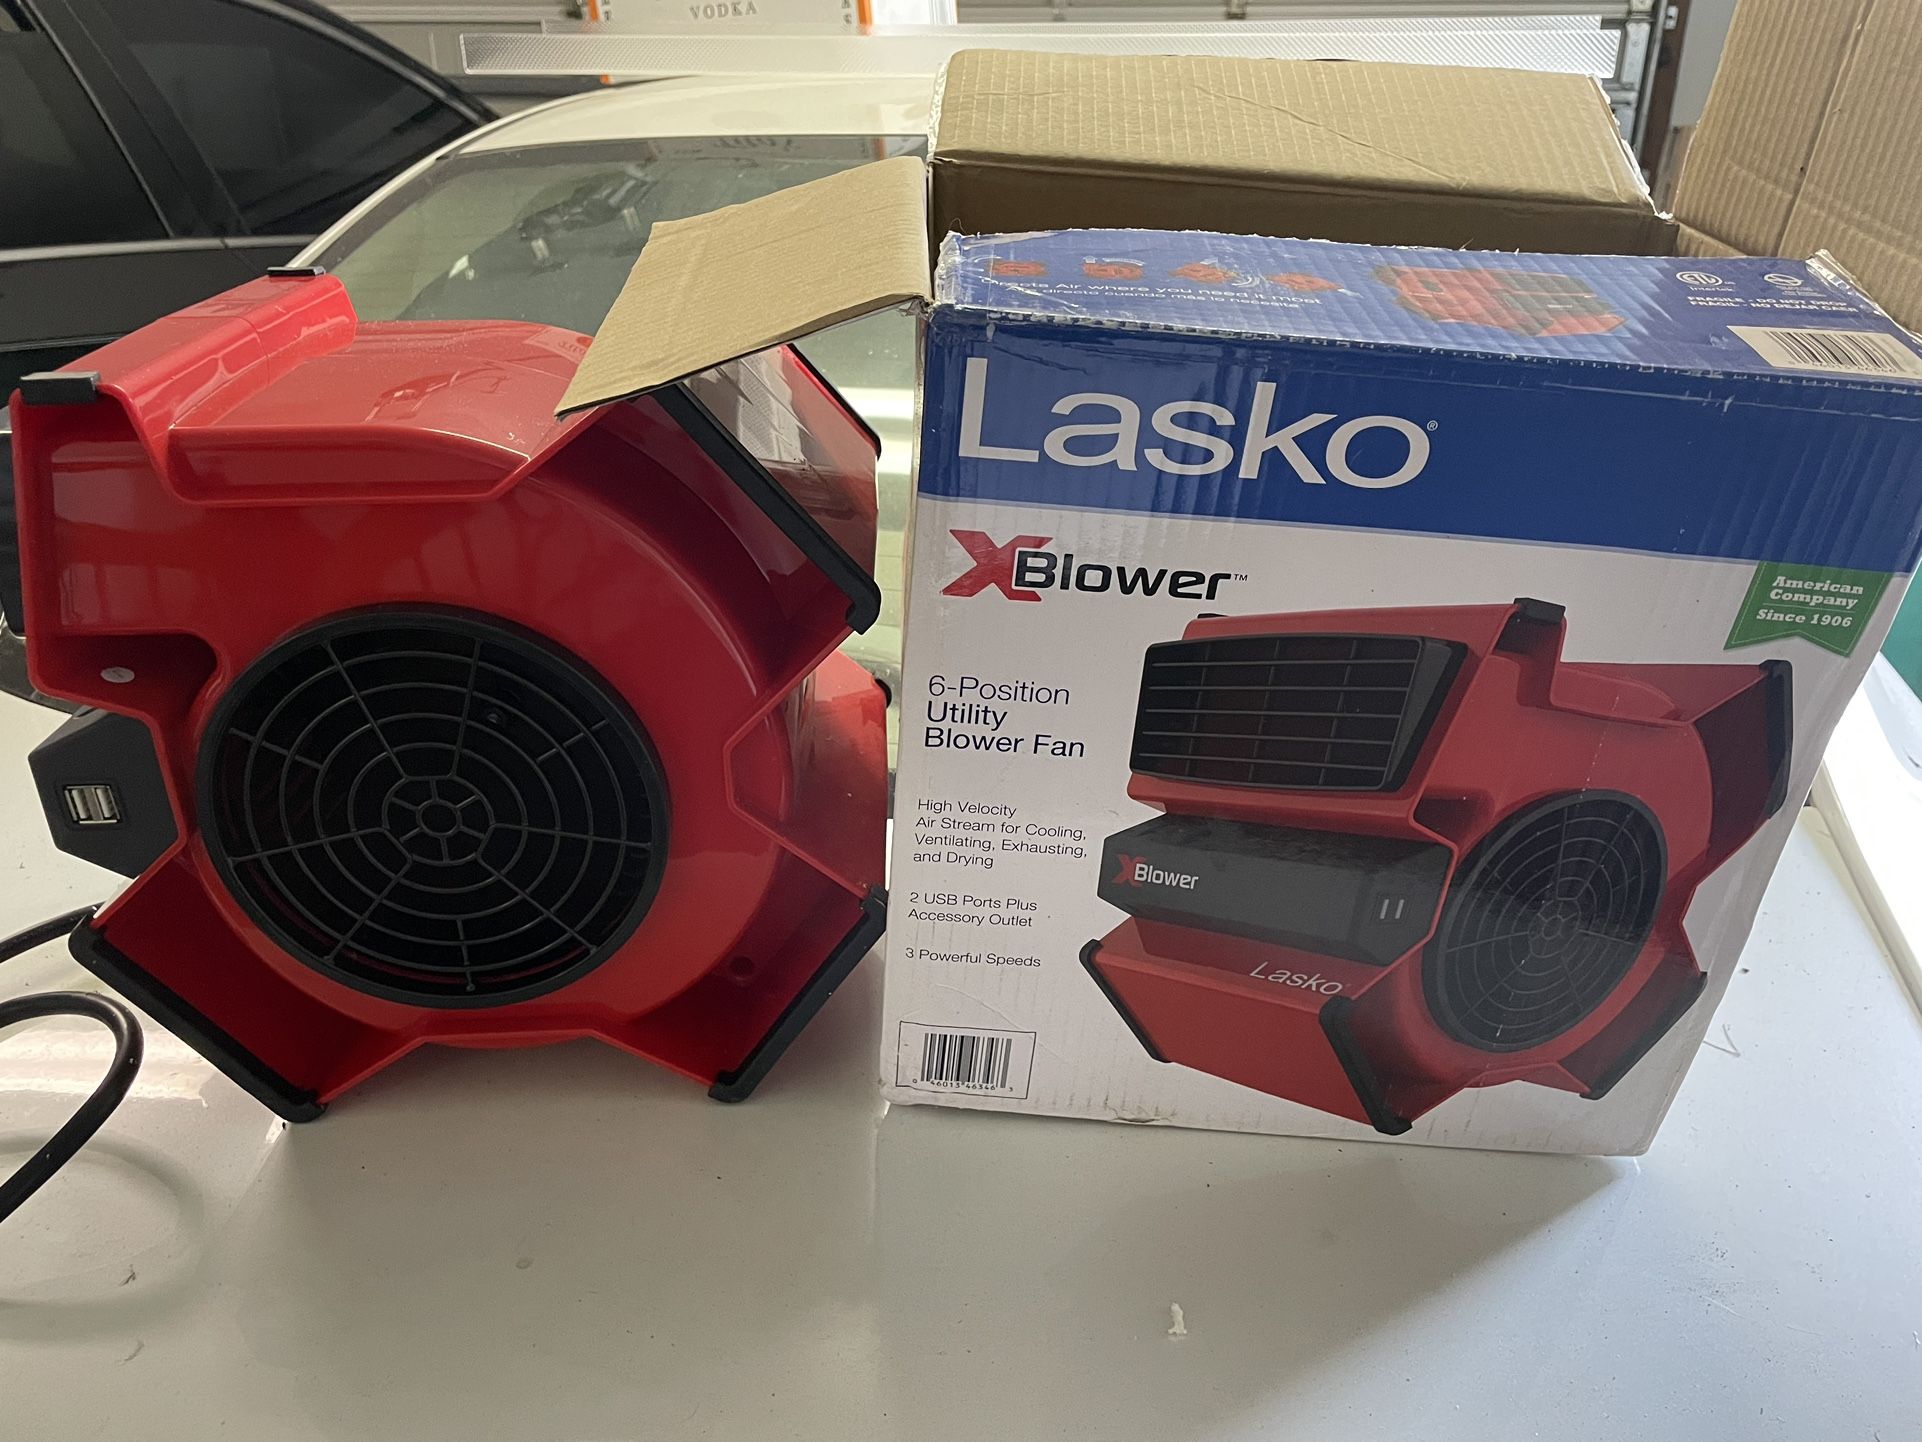 Lasko 11" X-Blower Multi-Position Utility Blower Fan with USB Port